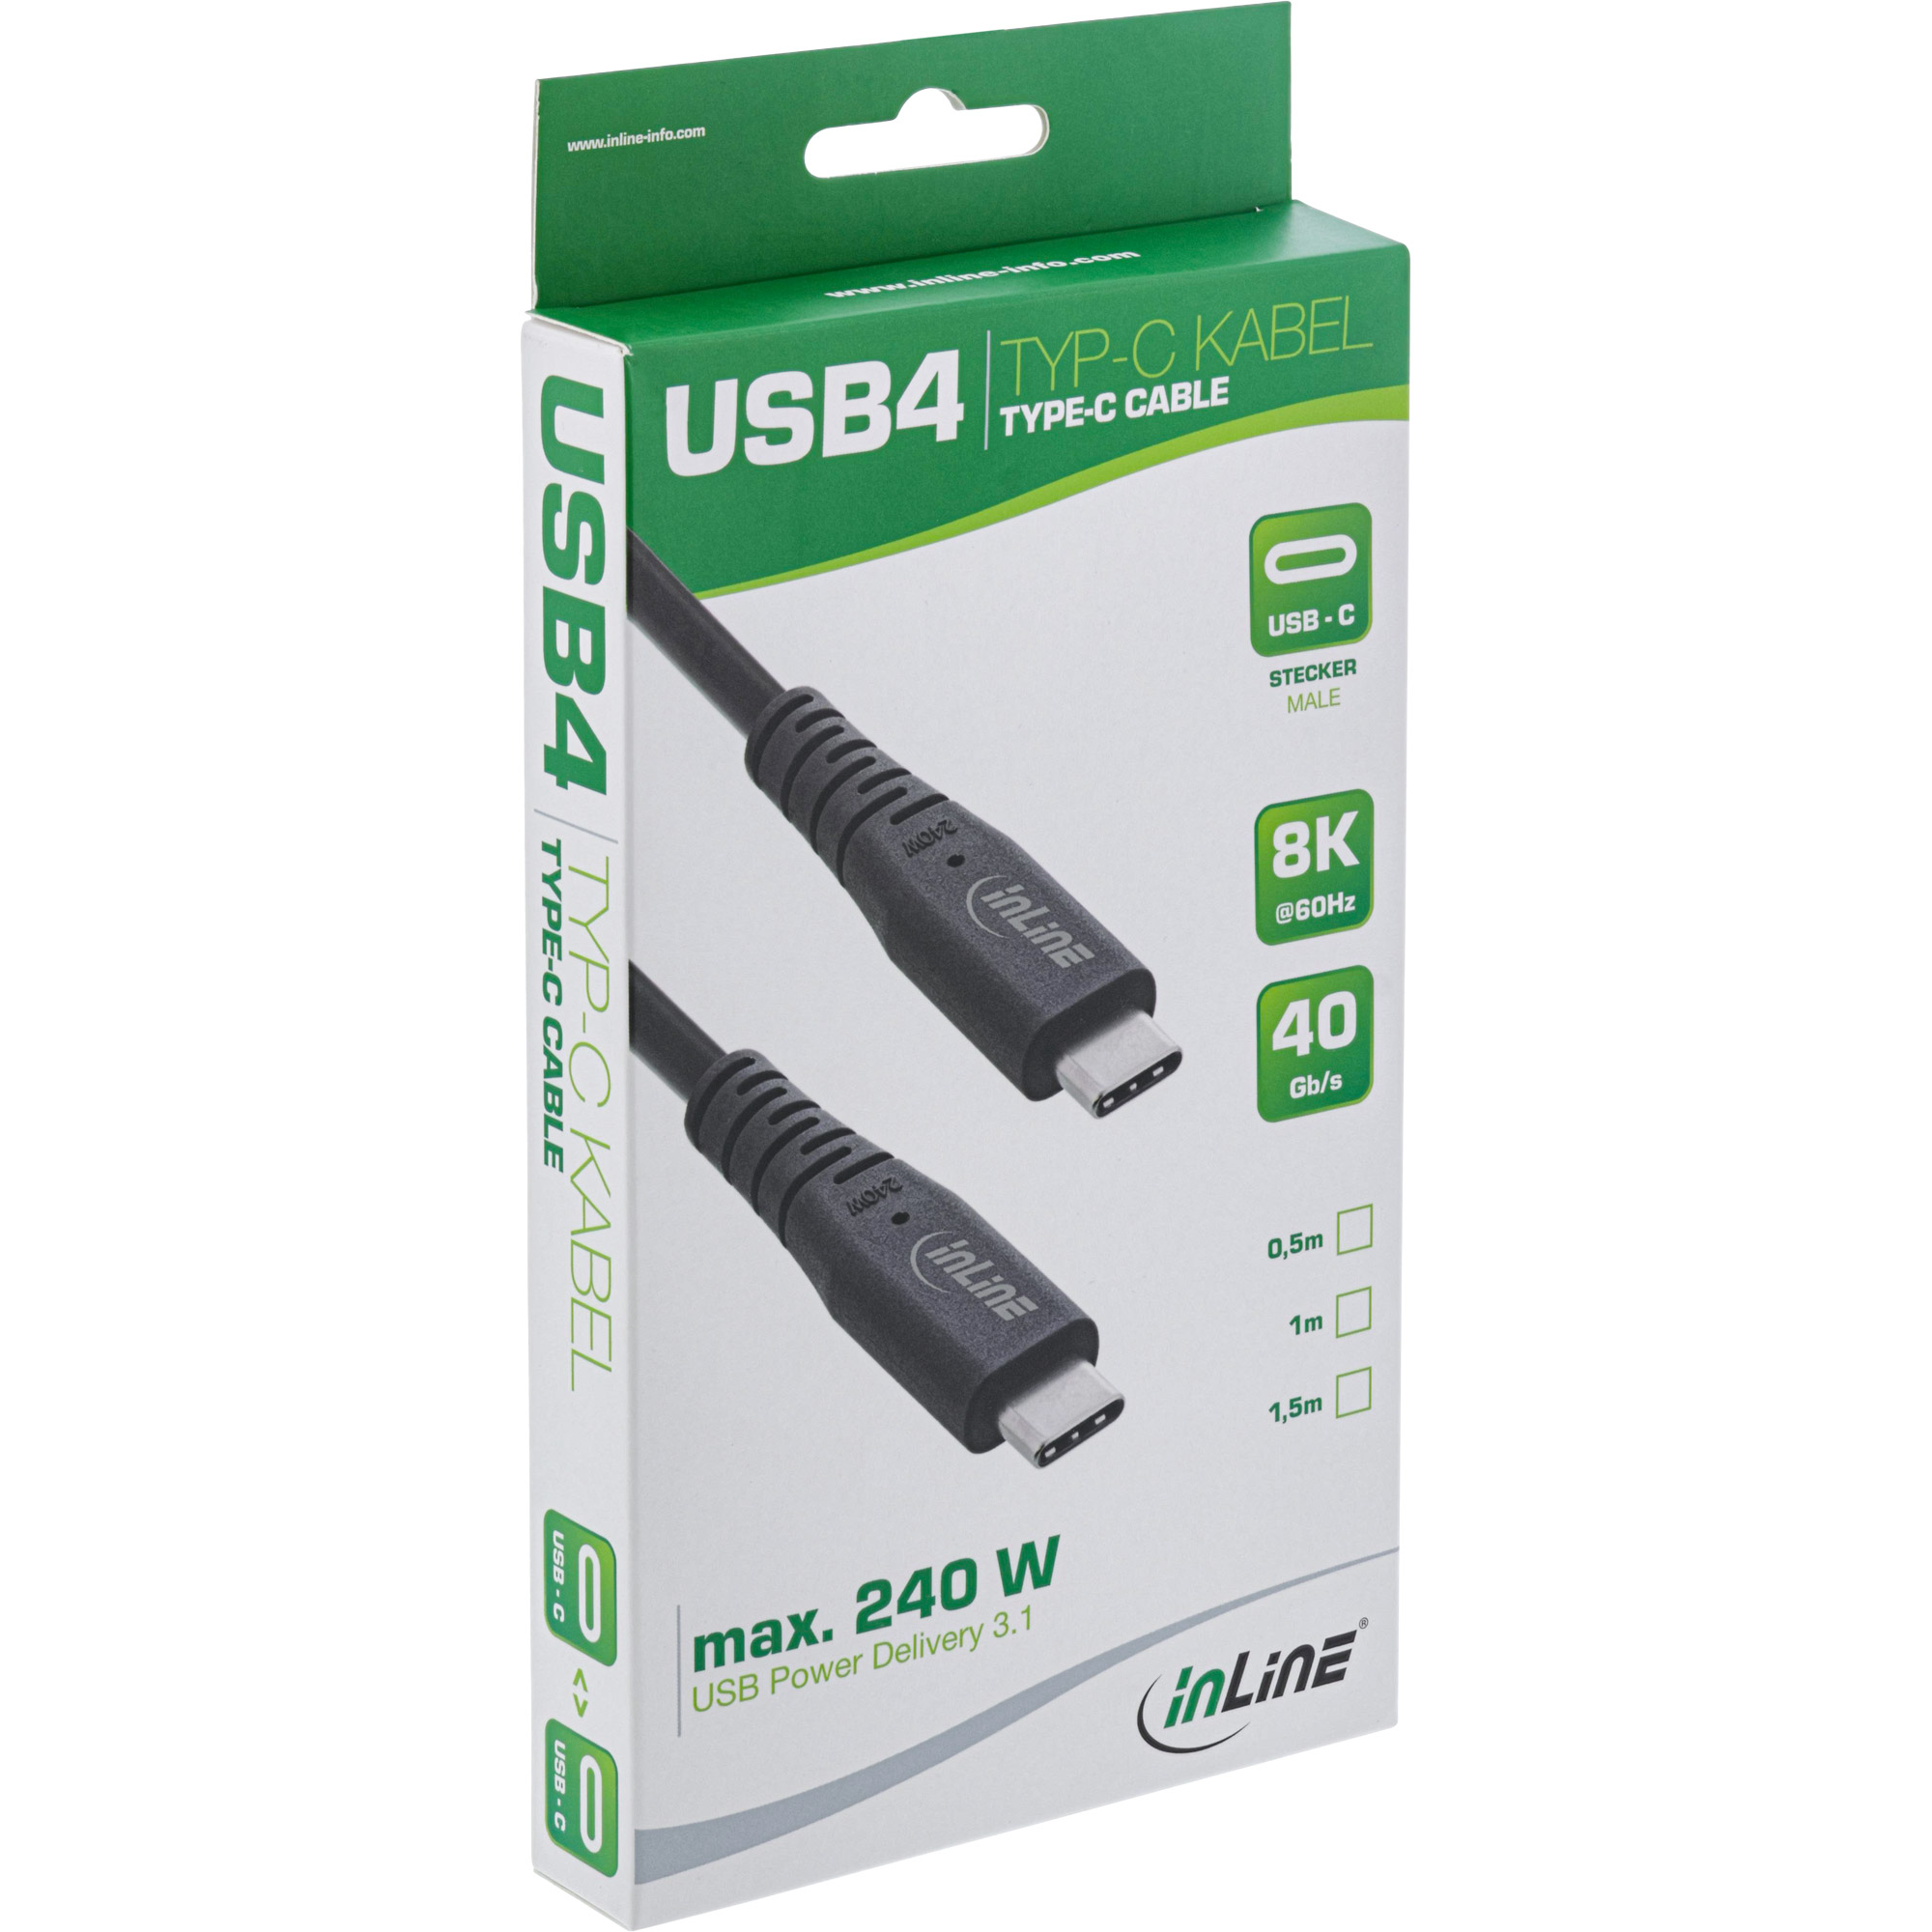 4in1 ZUBEHÖR SET: Netzteil USB Ladekabel KFZ Kabel Datenkabel für  Blackberry Storm 9530 Curve 8900 Torch